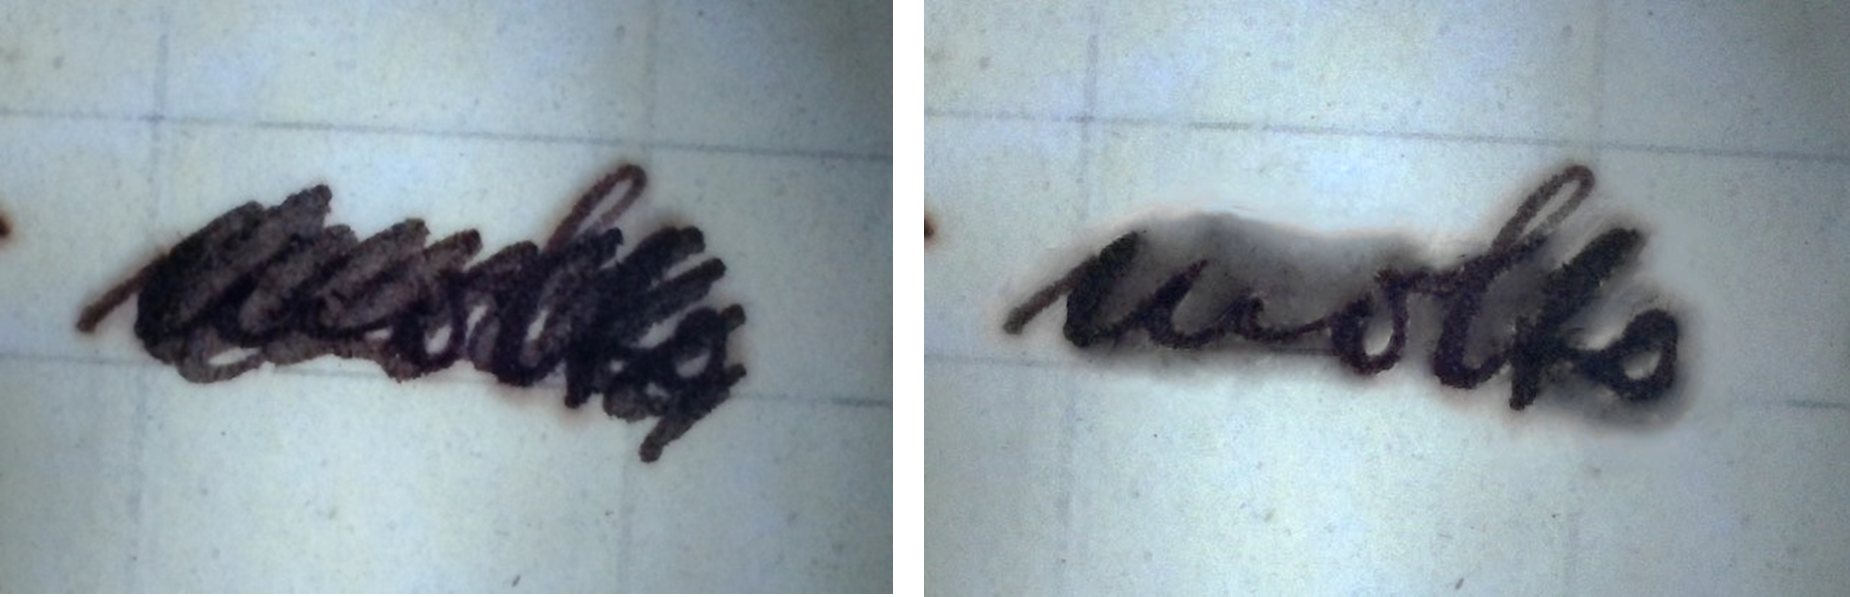 Dettaglio sottoposto a raggi ultravioletti (sinistra) e elaborato tramite post-produzione digitale (destra).